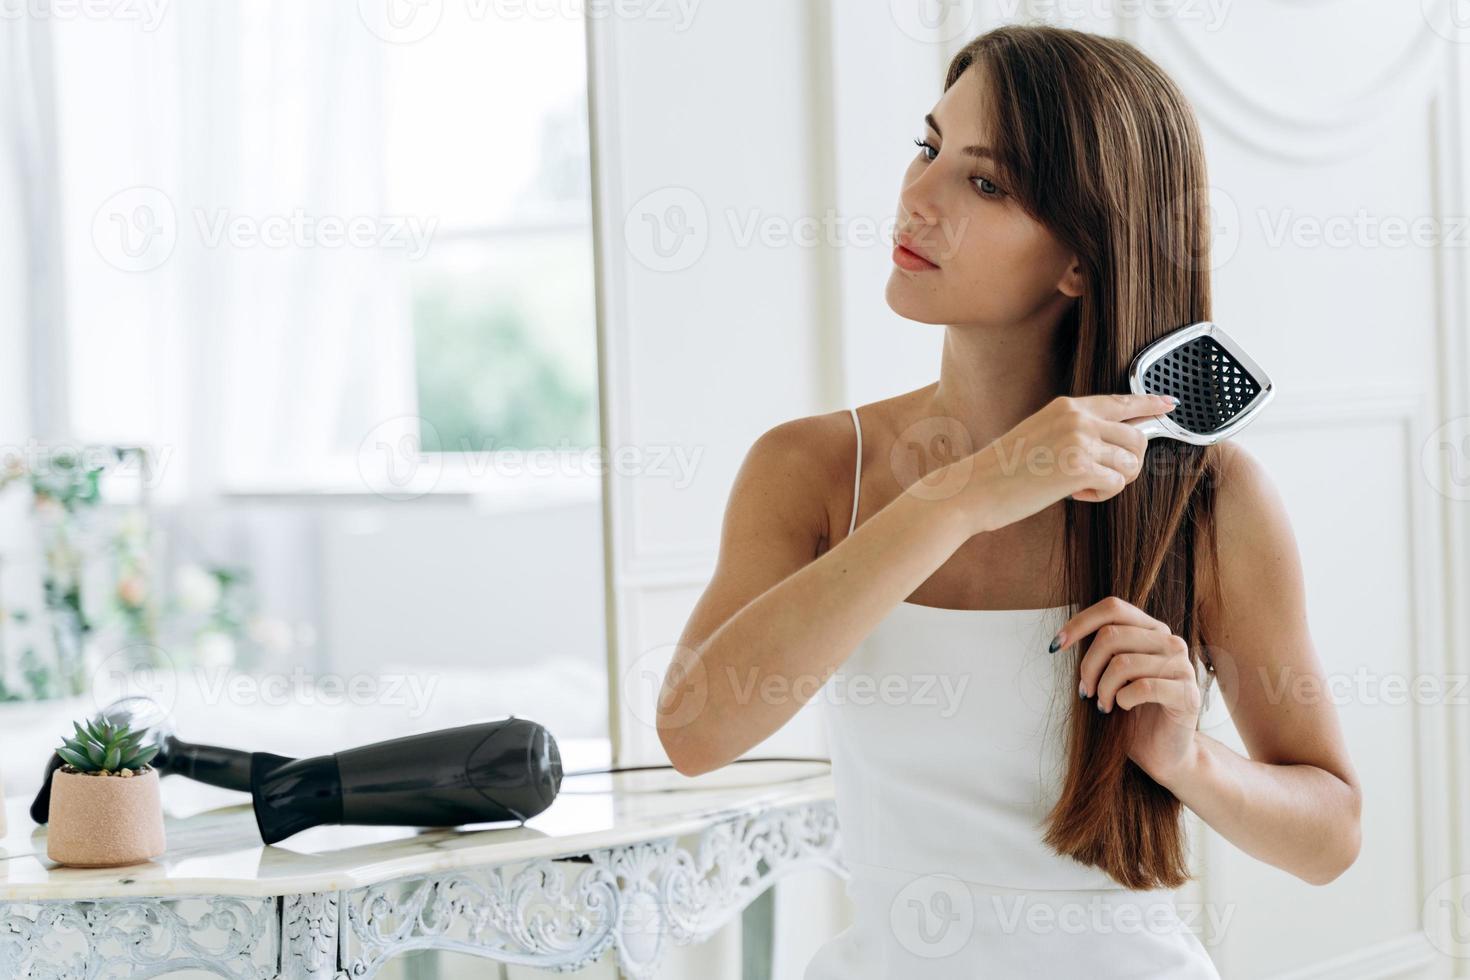 midja upp porträtt av strålande dam som kammar sitt långa mörka hår medan hon tittar bort med ett lugnt leende. hårvårdskoncept. lager foto